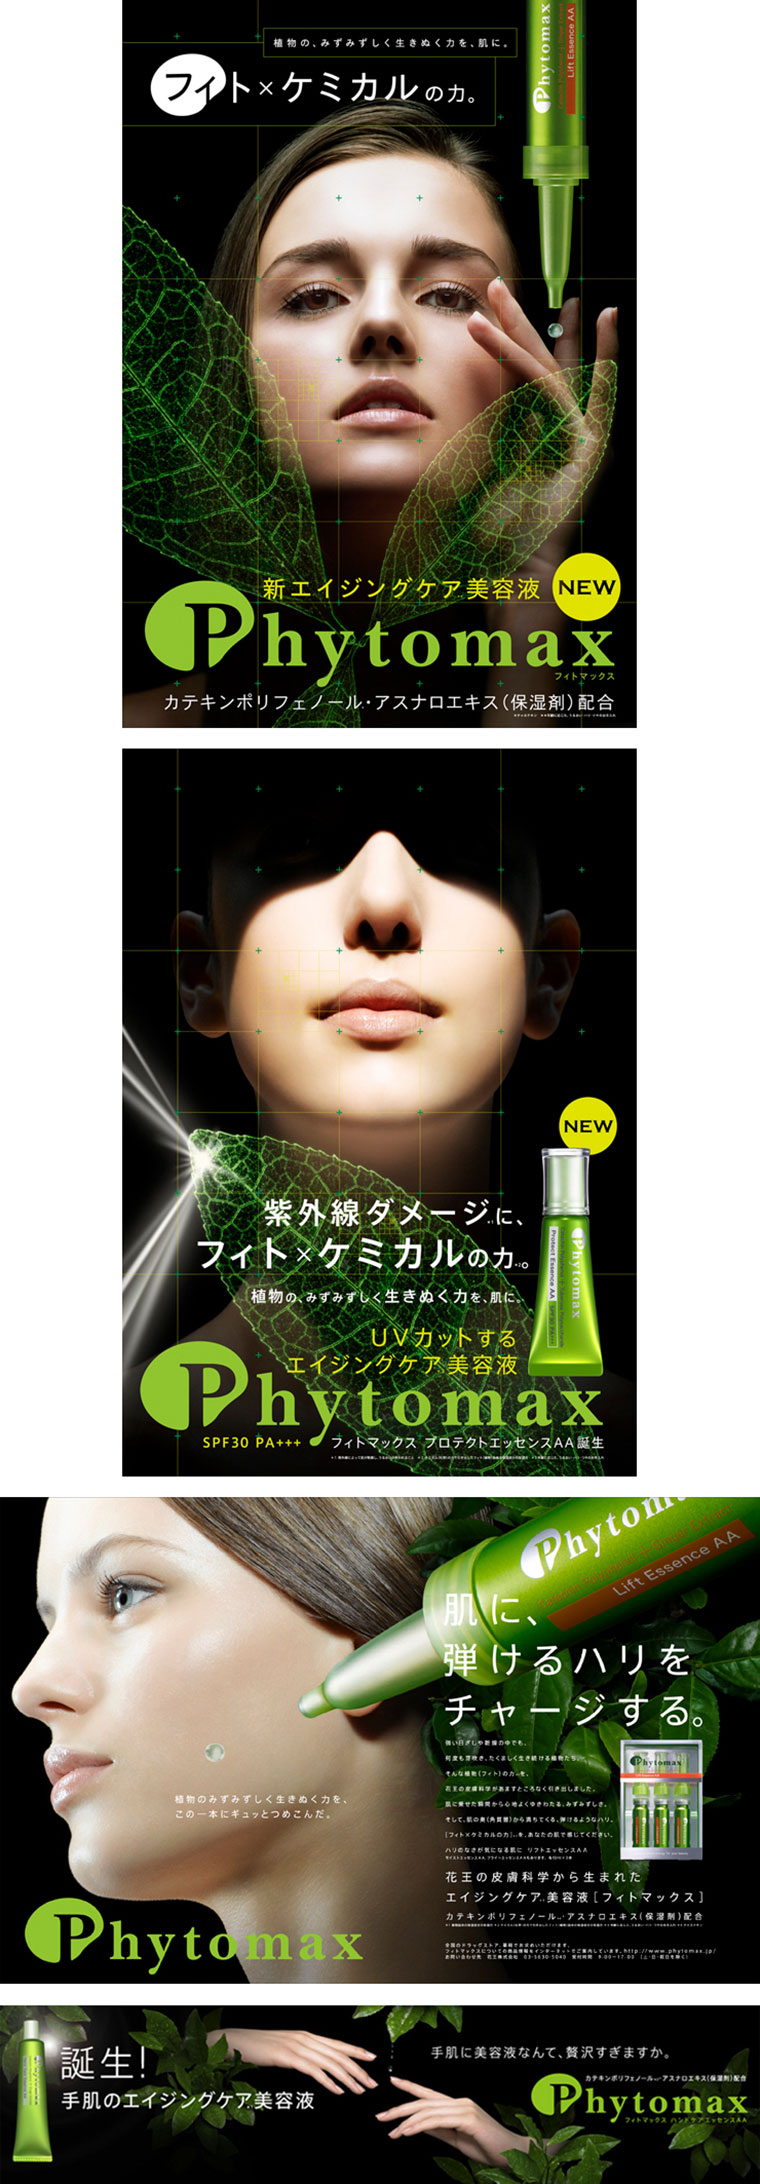 2005 KAO_phytomax ： Poster